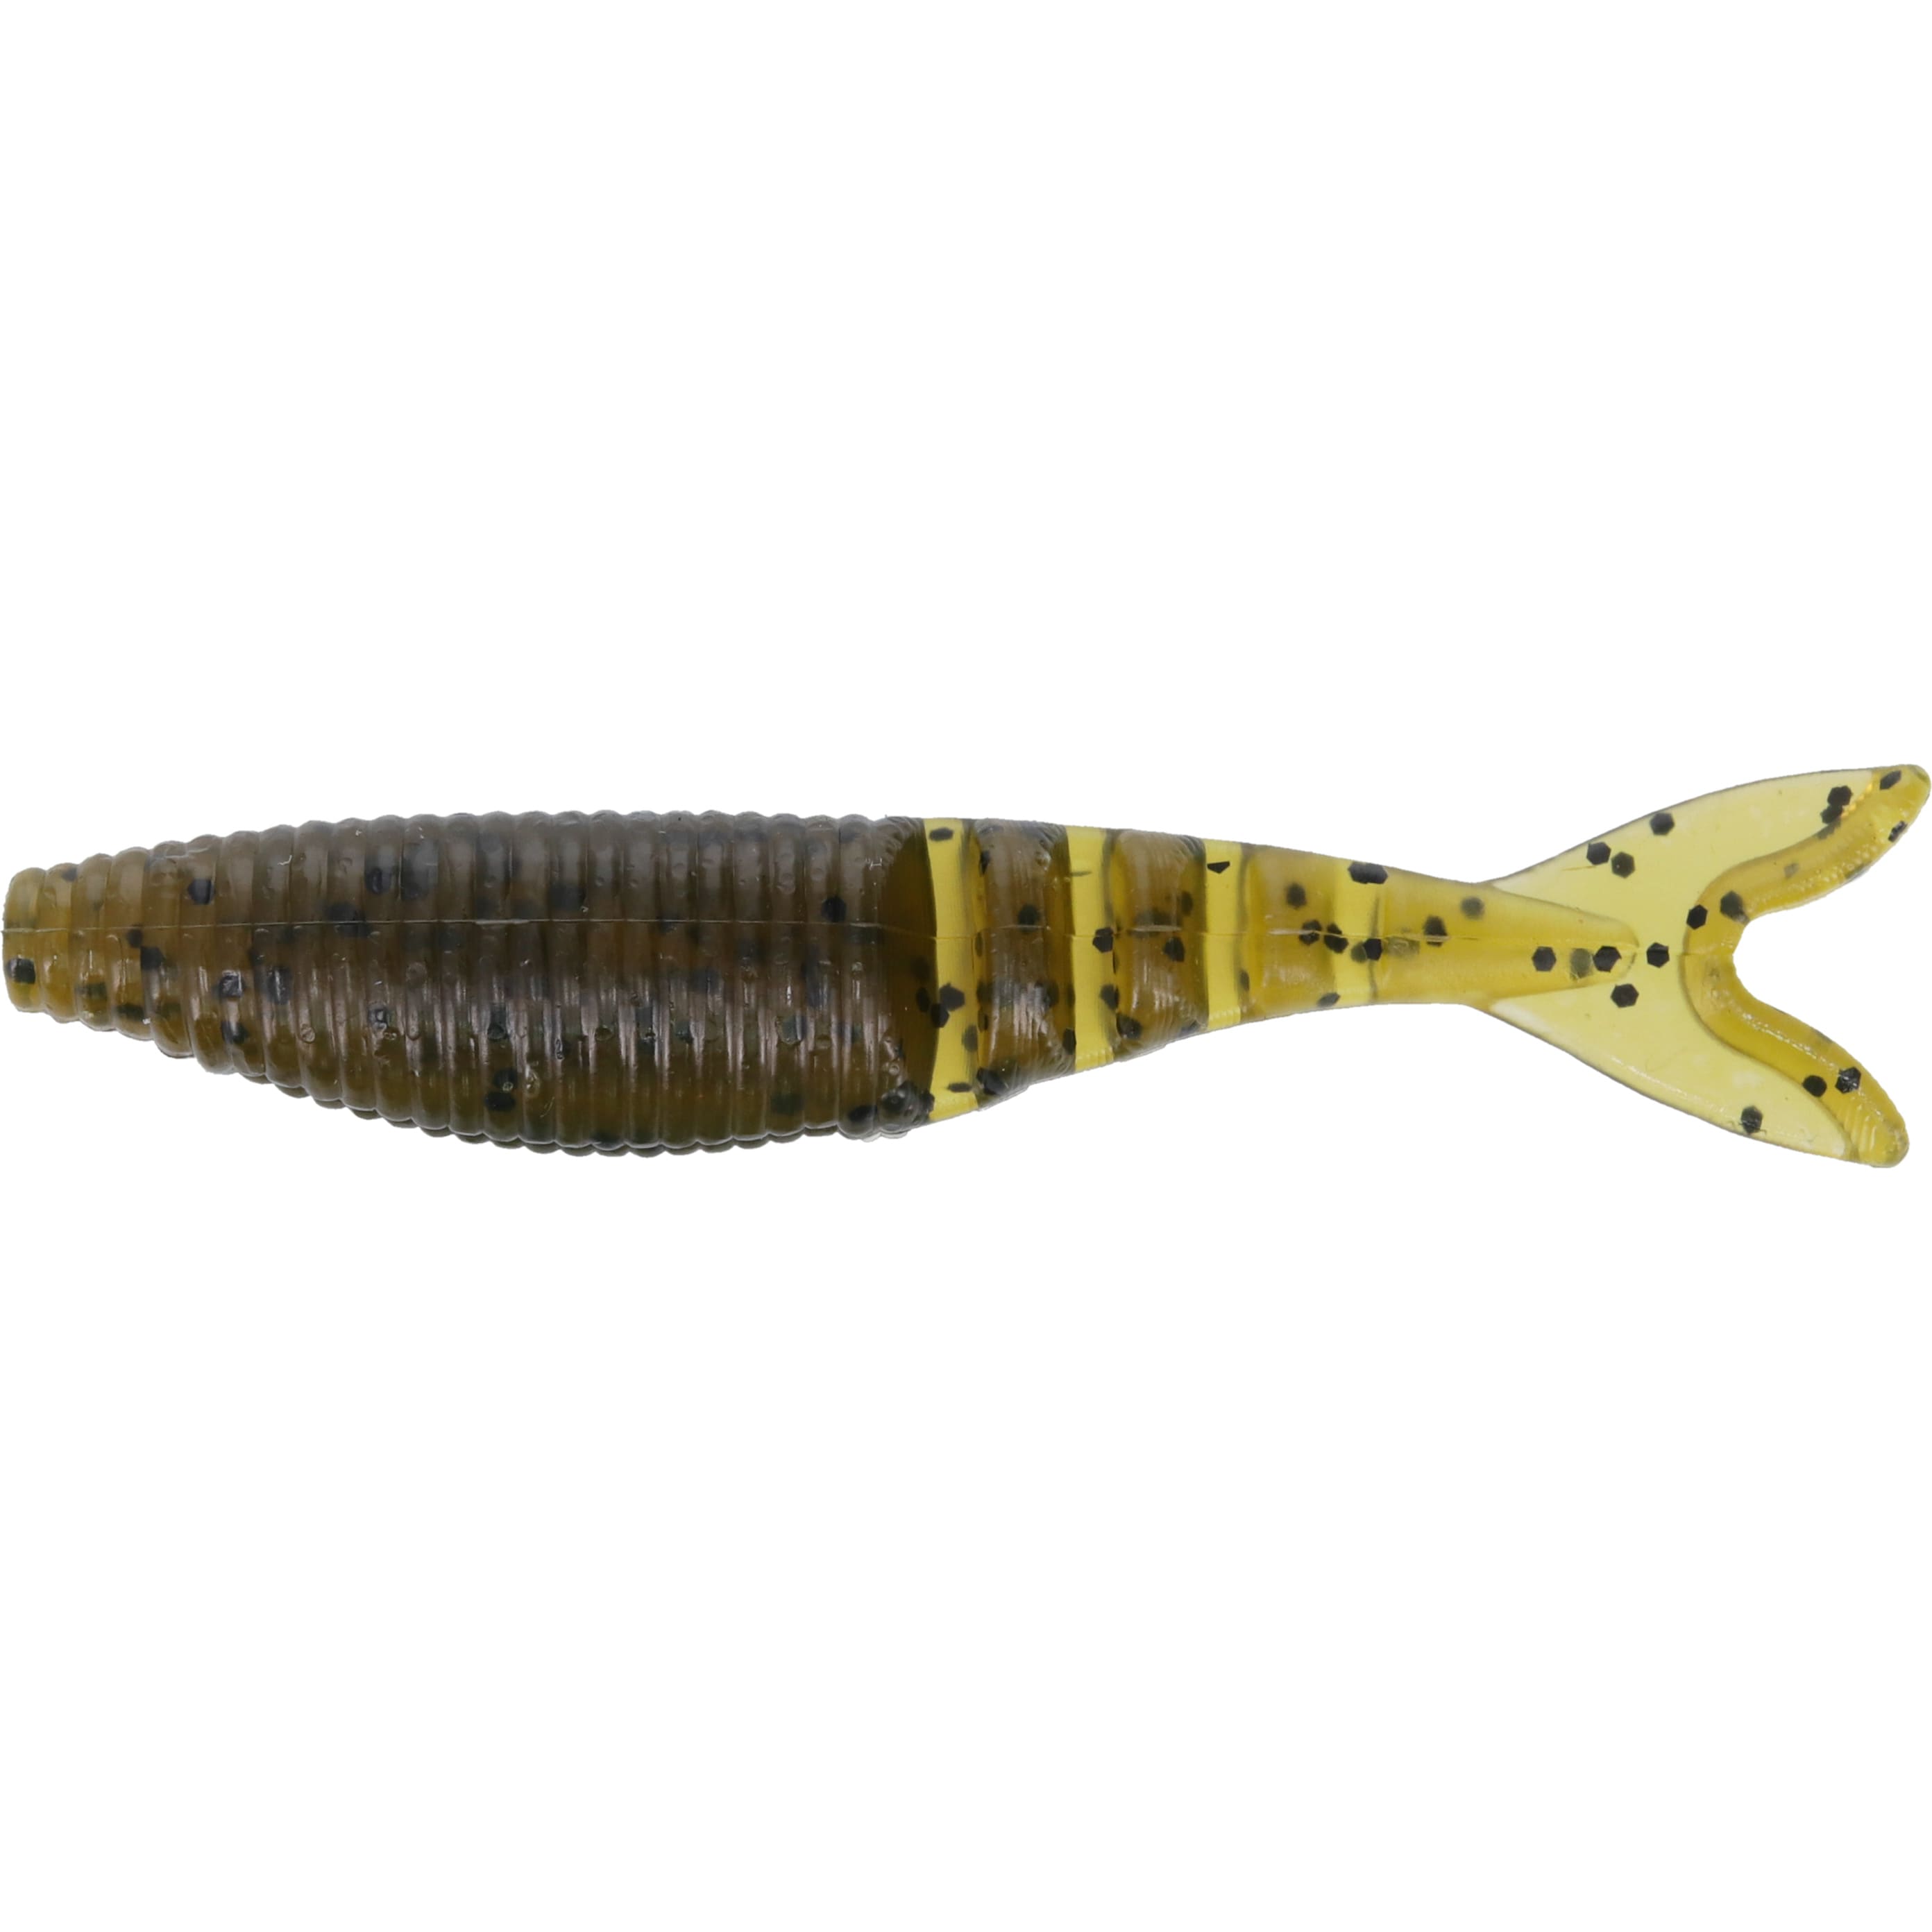 Aventik 80 Pcs Paddle Tail Swimbaits, Bicolor Soft Plastic Fishing